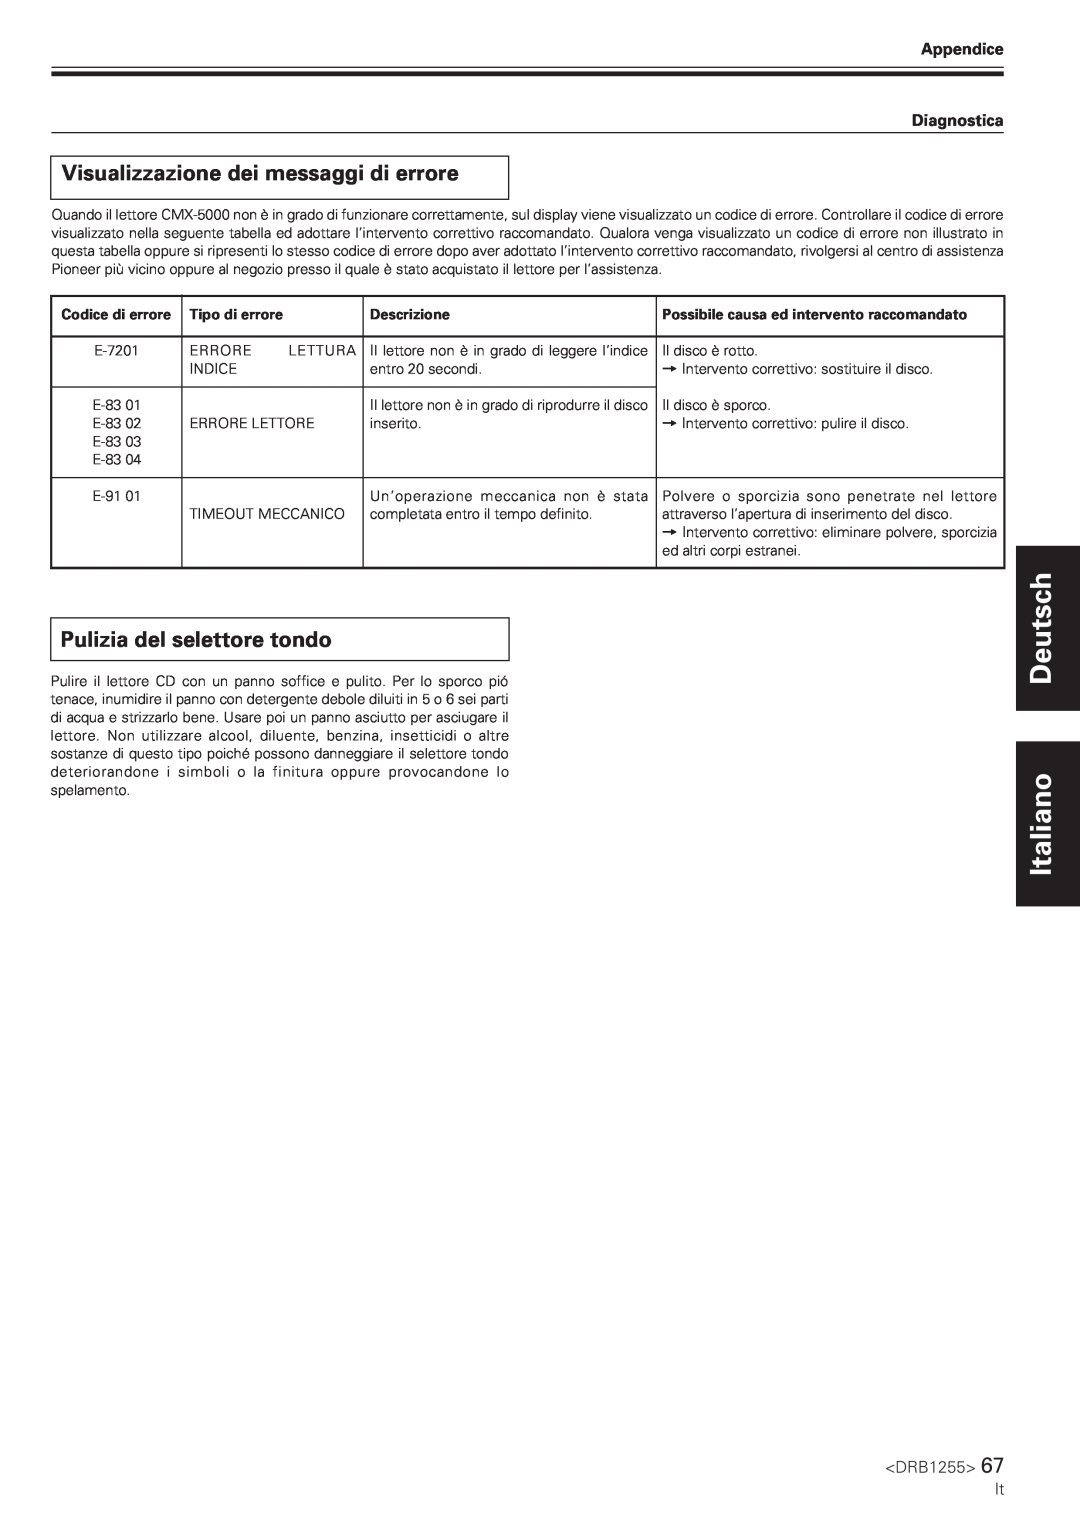 Pioneer CMX-5000 manual Visualizzazione dei messaggi di errore, Pulizia del selettore tondo, Deutsch Italiano, DRB1255 